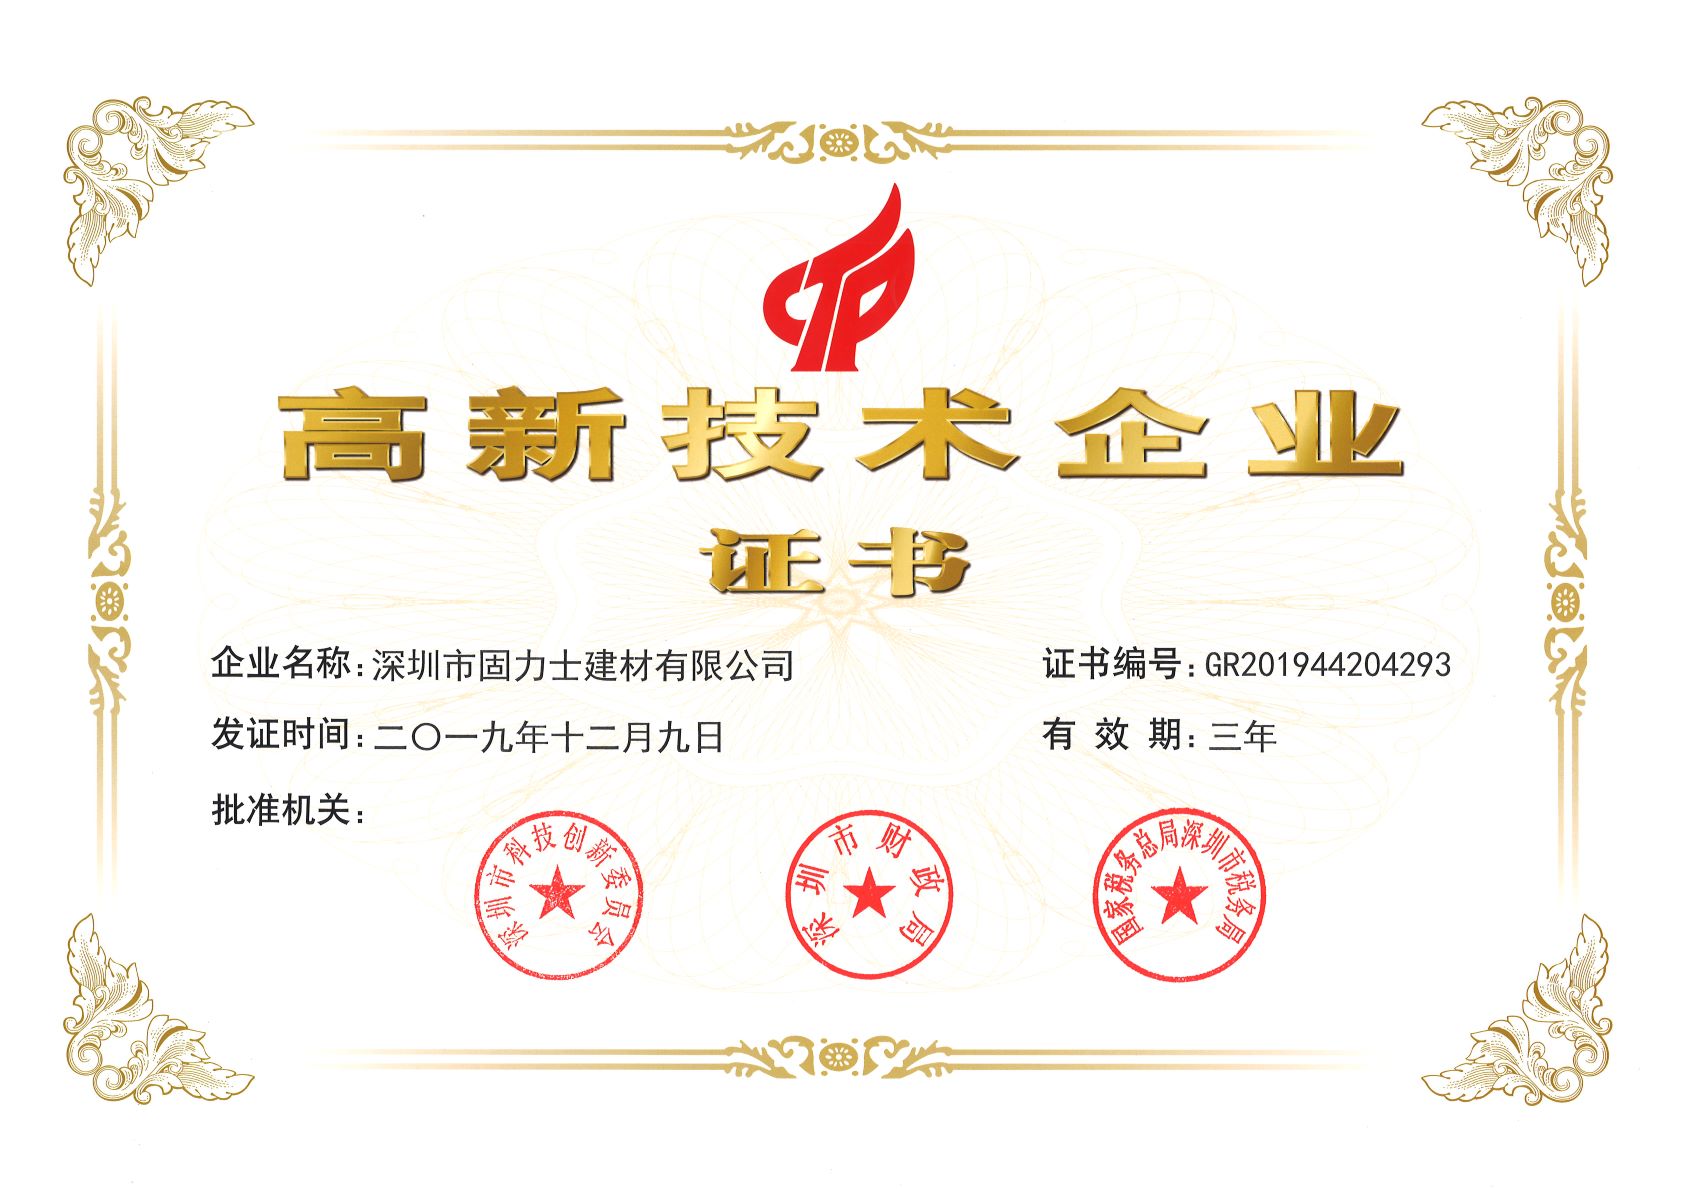 攀枝花热烈祝贺深圳市固力士建材有限公司通过高新技术企业认证